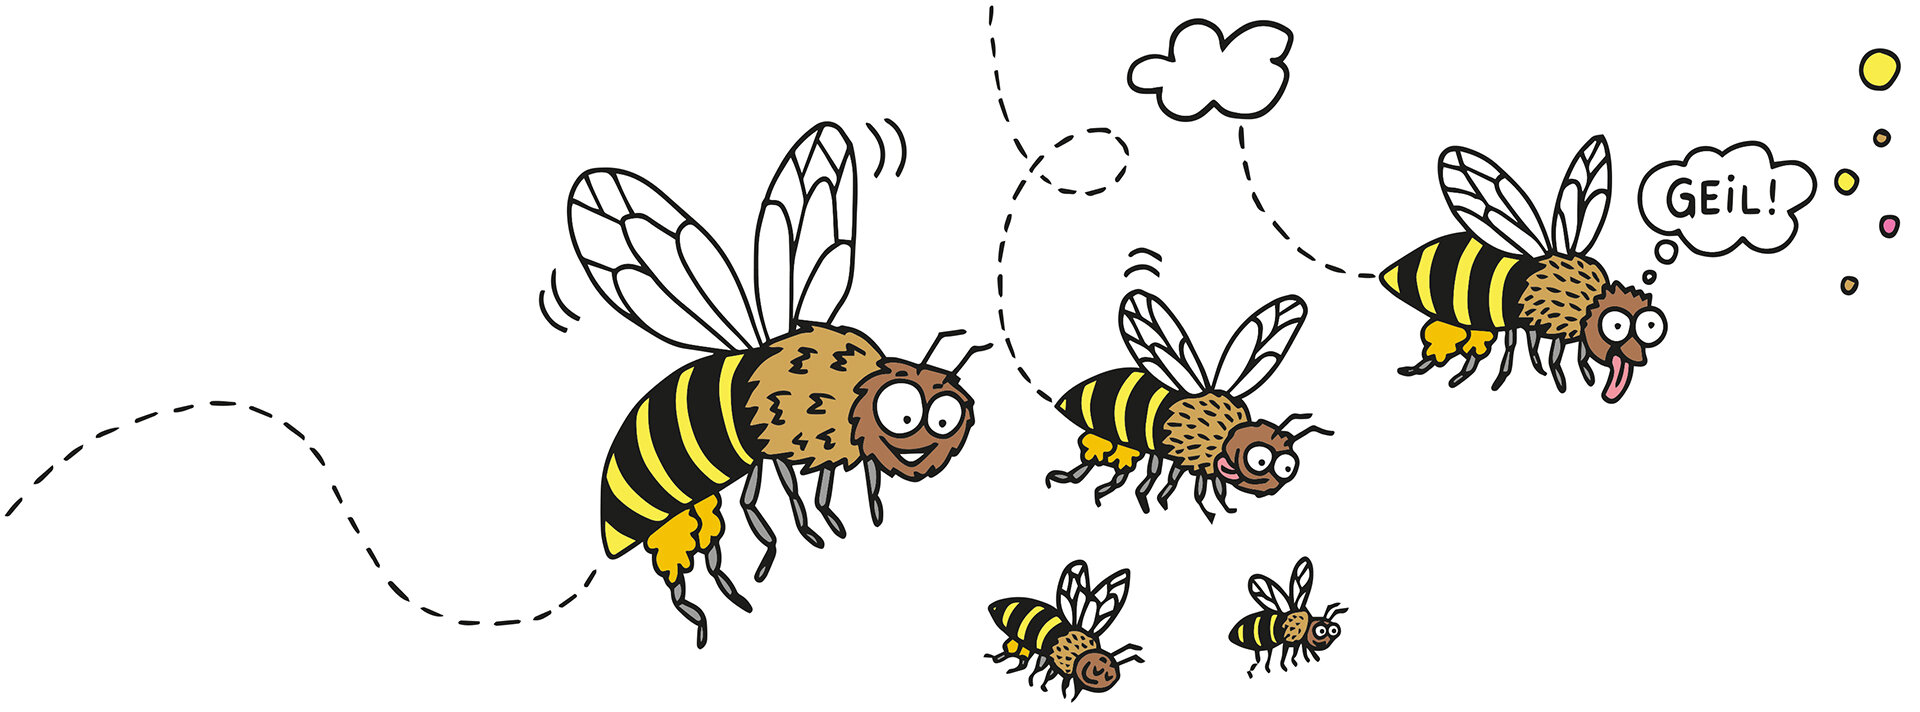 Illustration mehrerer Bienen. Eine hat ein Sprechblase und sagt: 